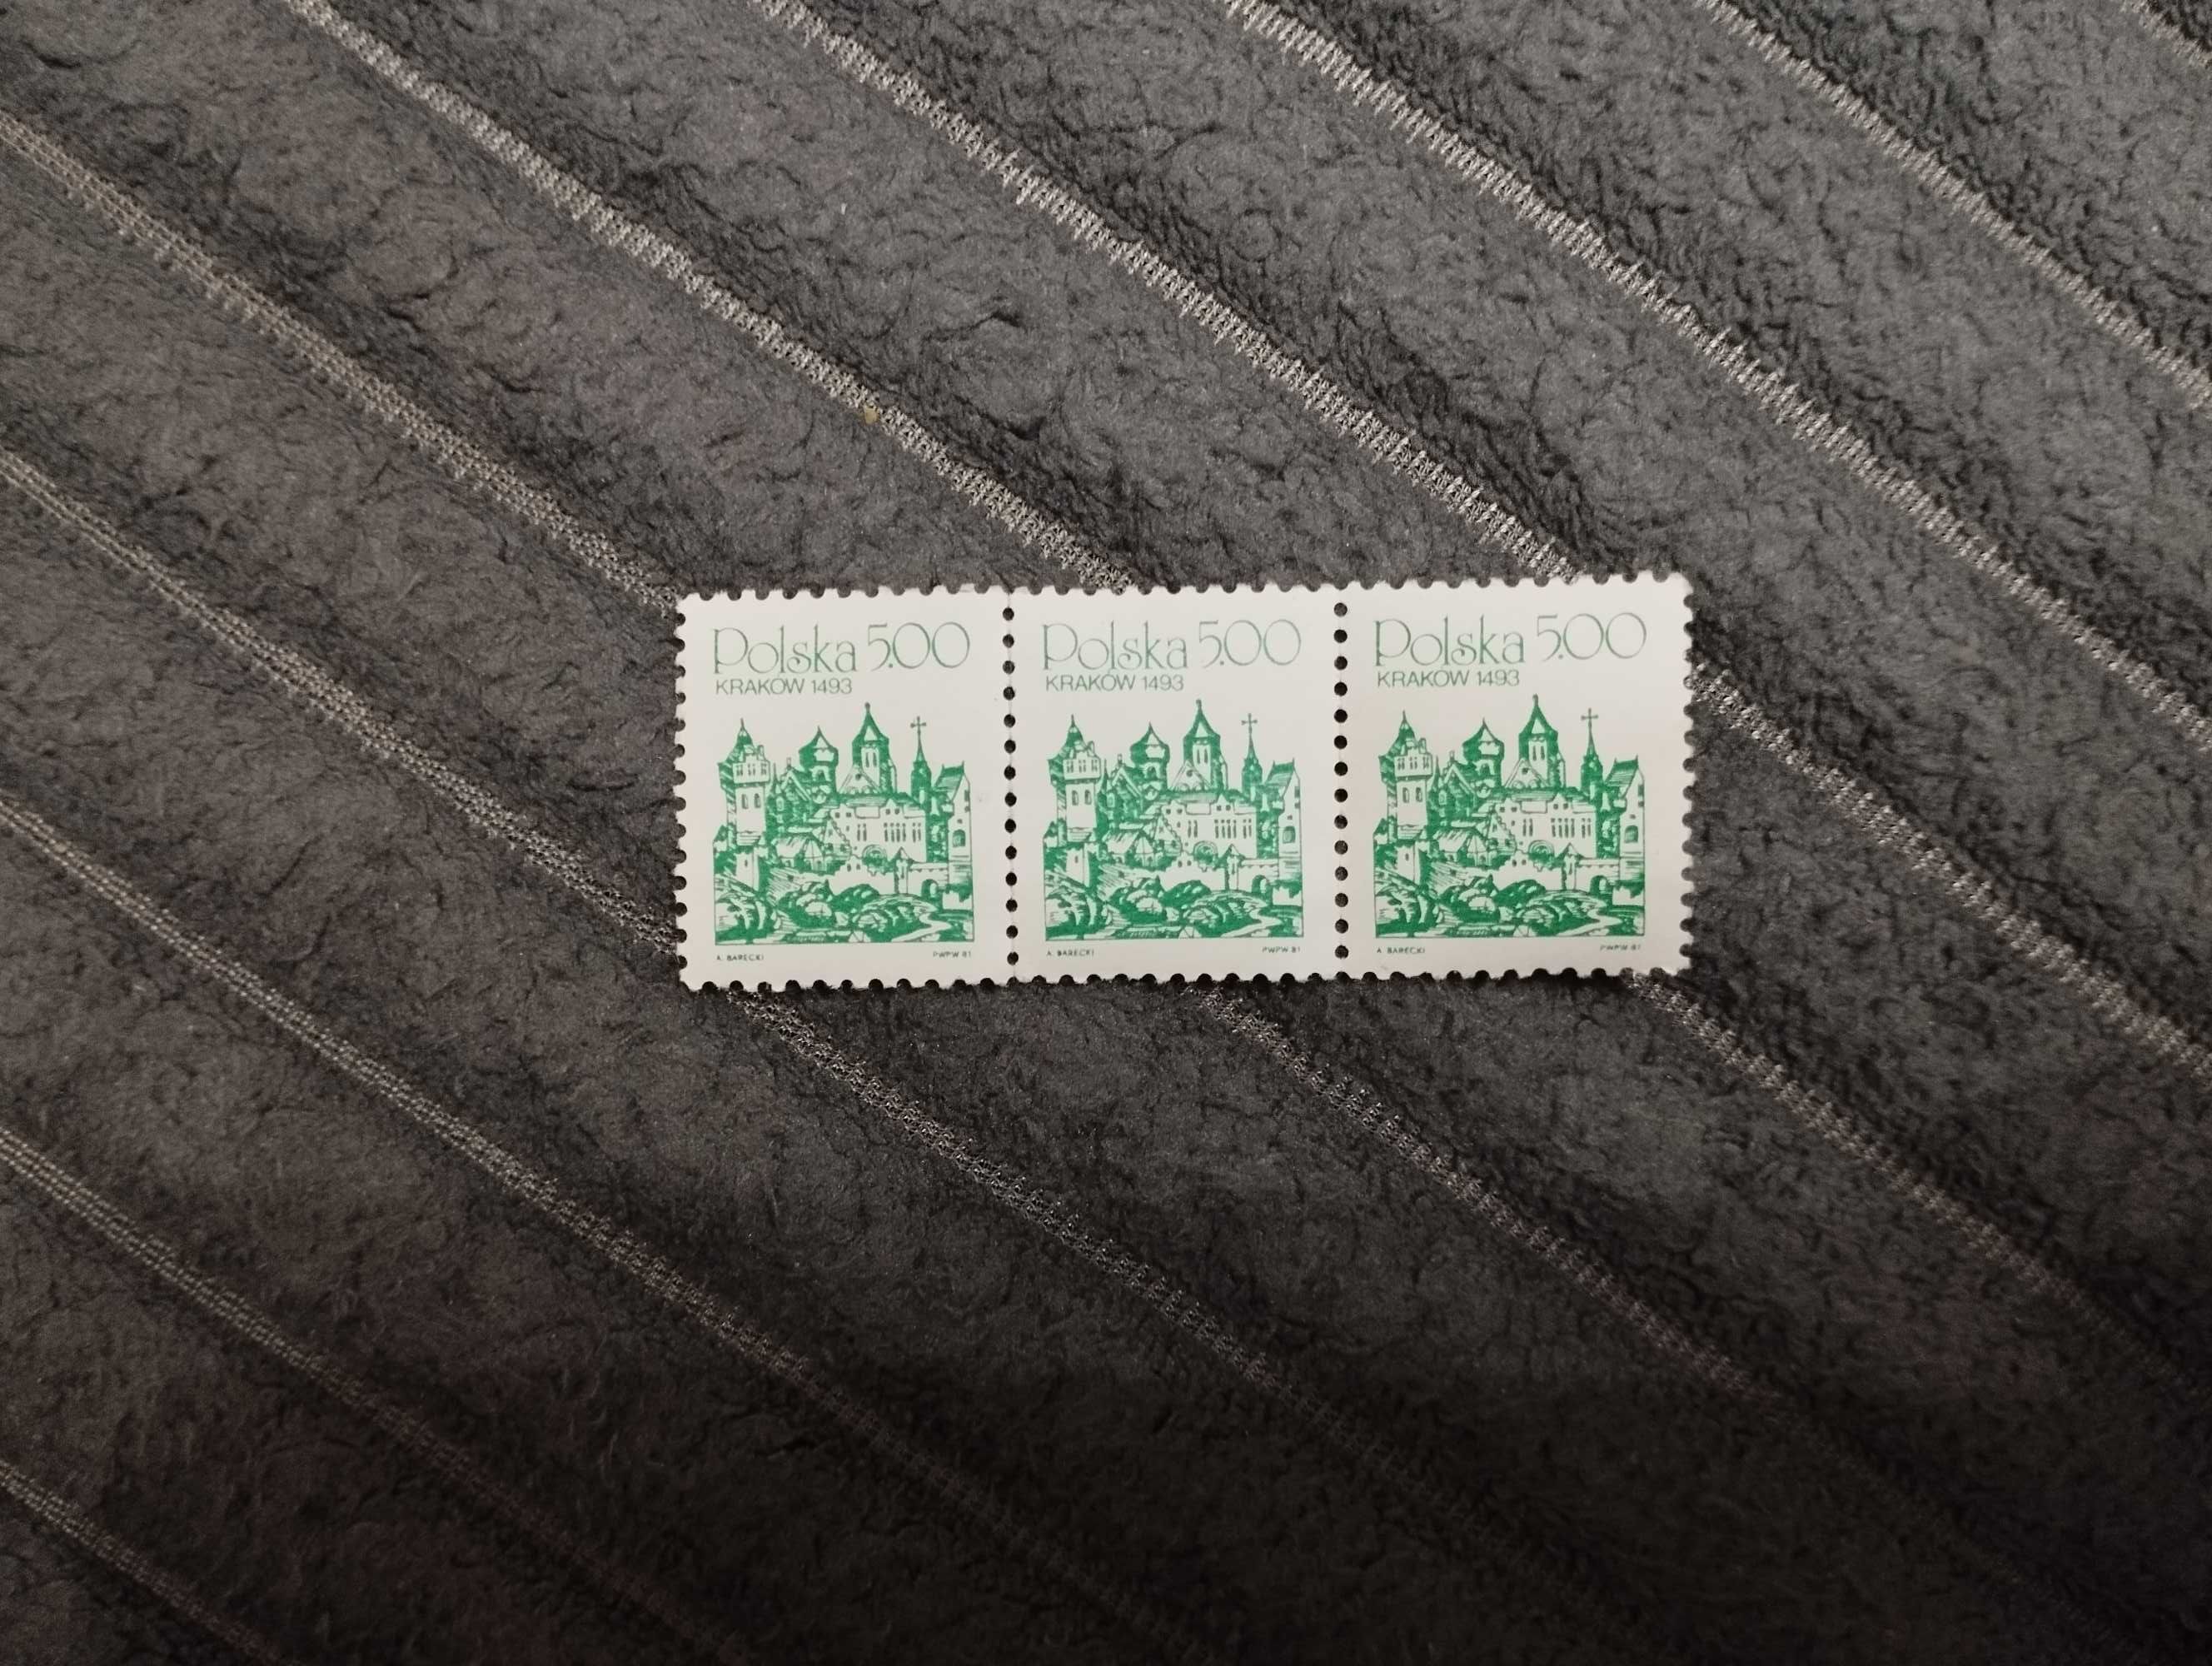 3 znaczki pocztowe Polska 500 Kraków 1493